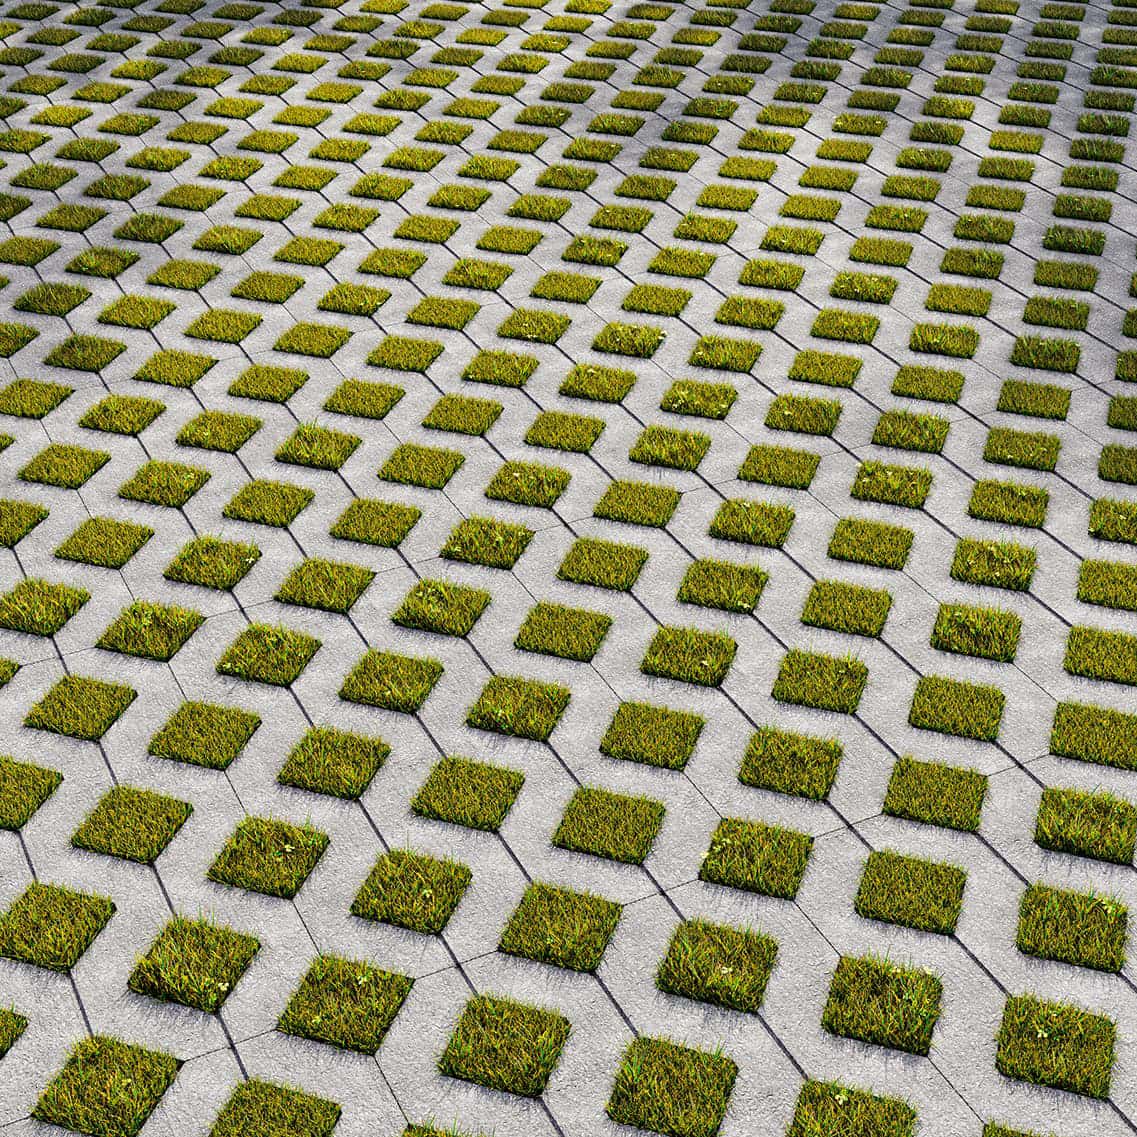 Grass Cover Grid Hexagonal